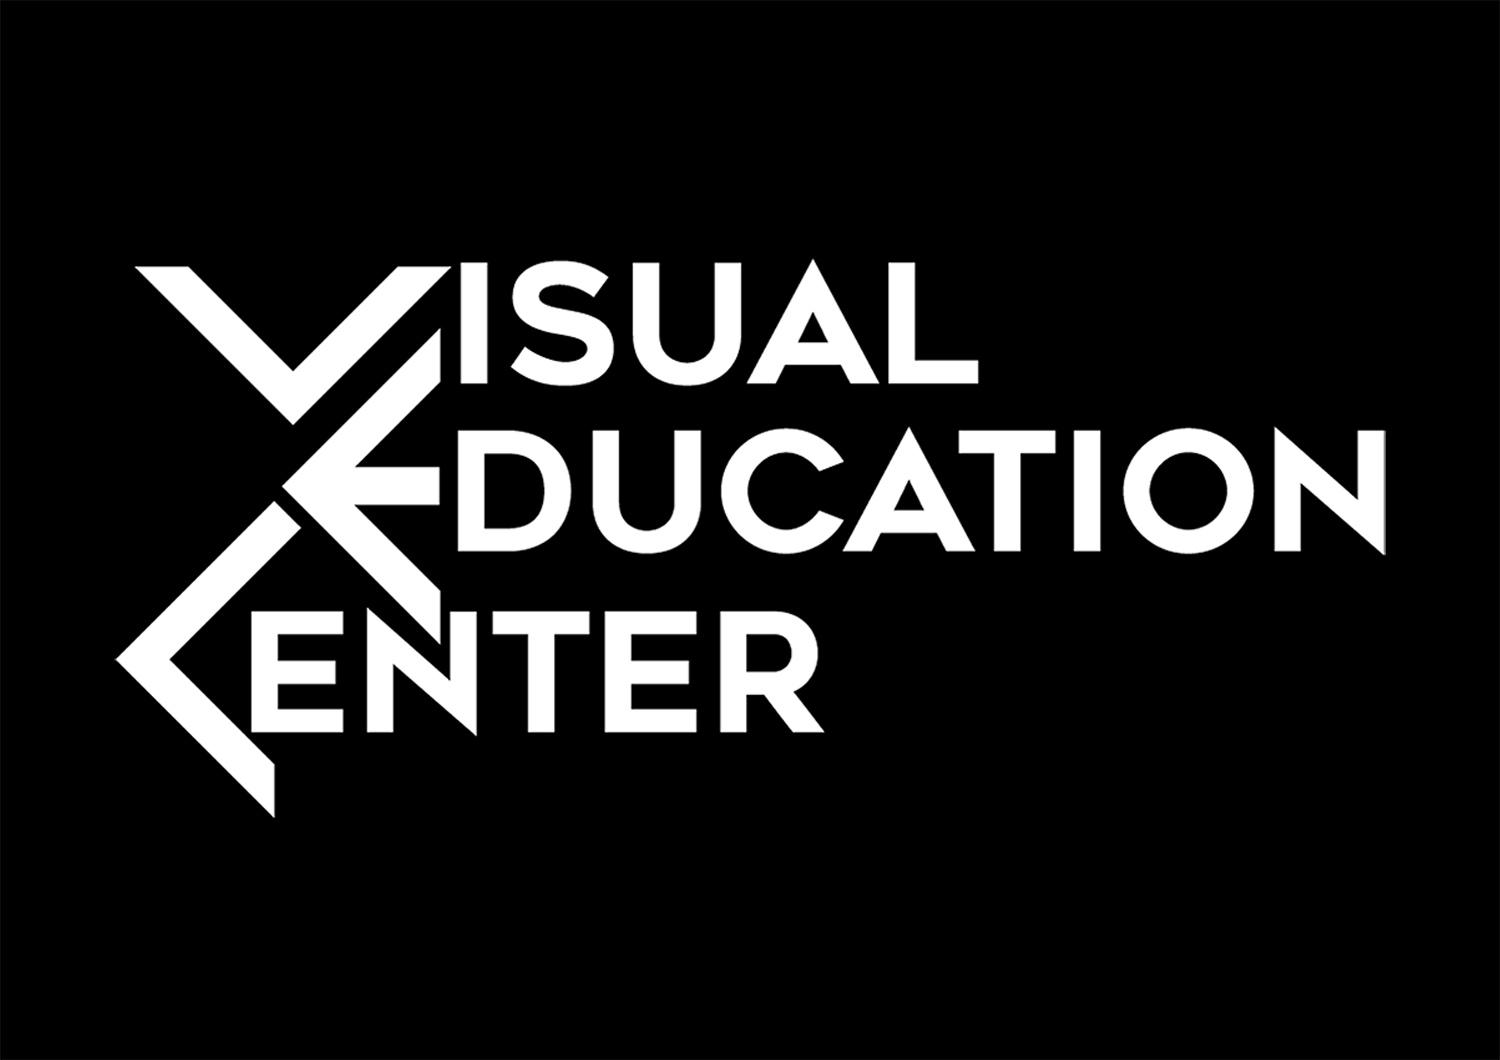 ვიზუალური განათლების ცენტრი - პანკისის მედიათეკა